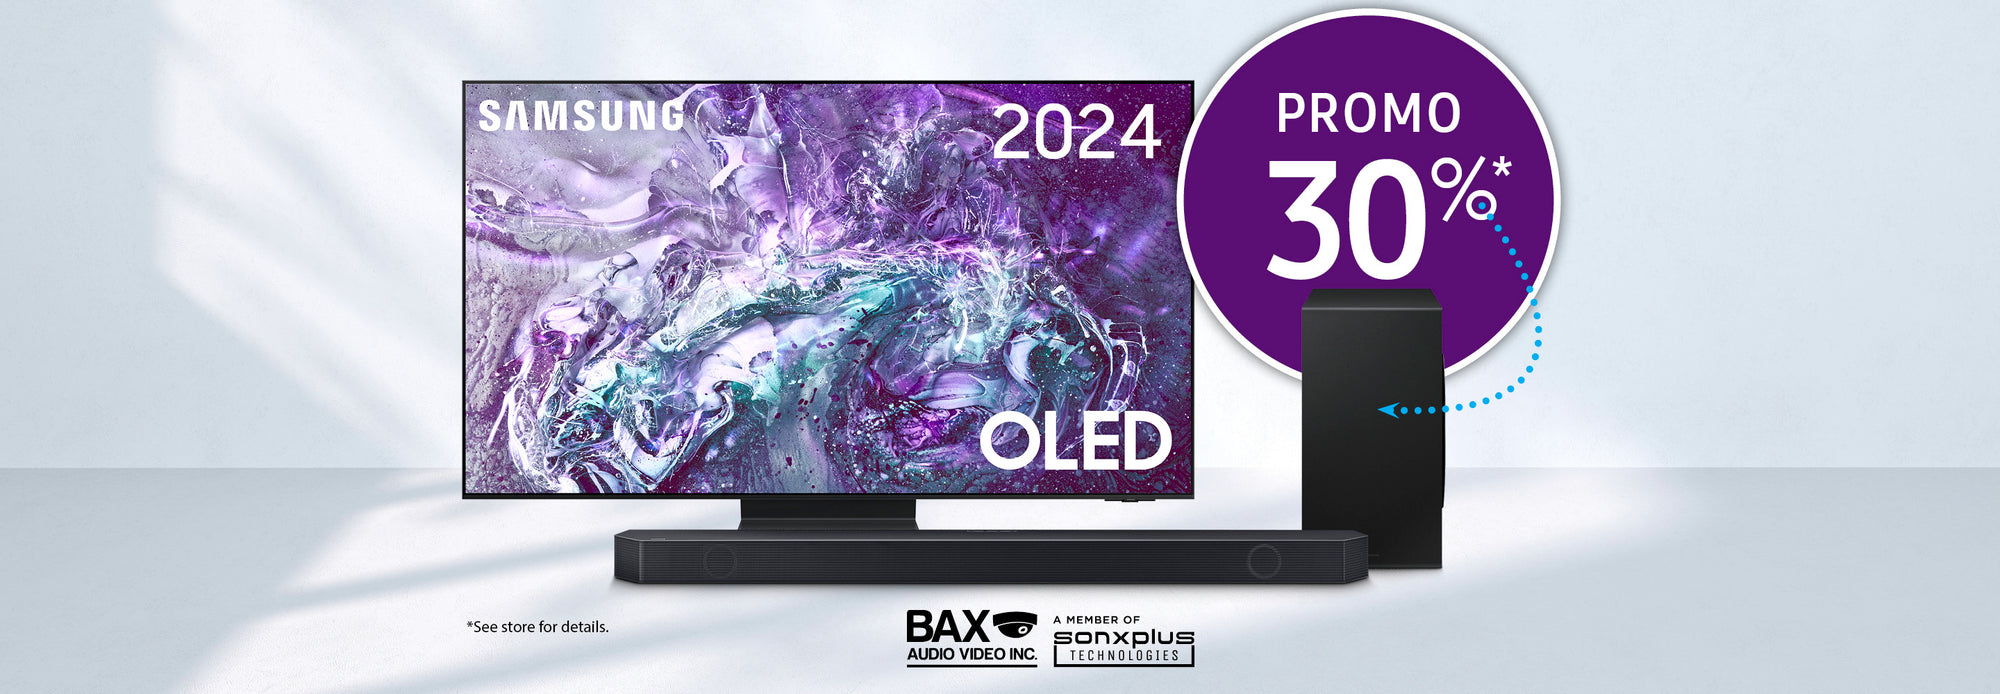 Promo 30% Samsung | BAX Audio Video